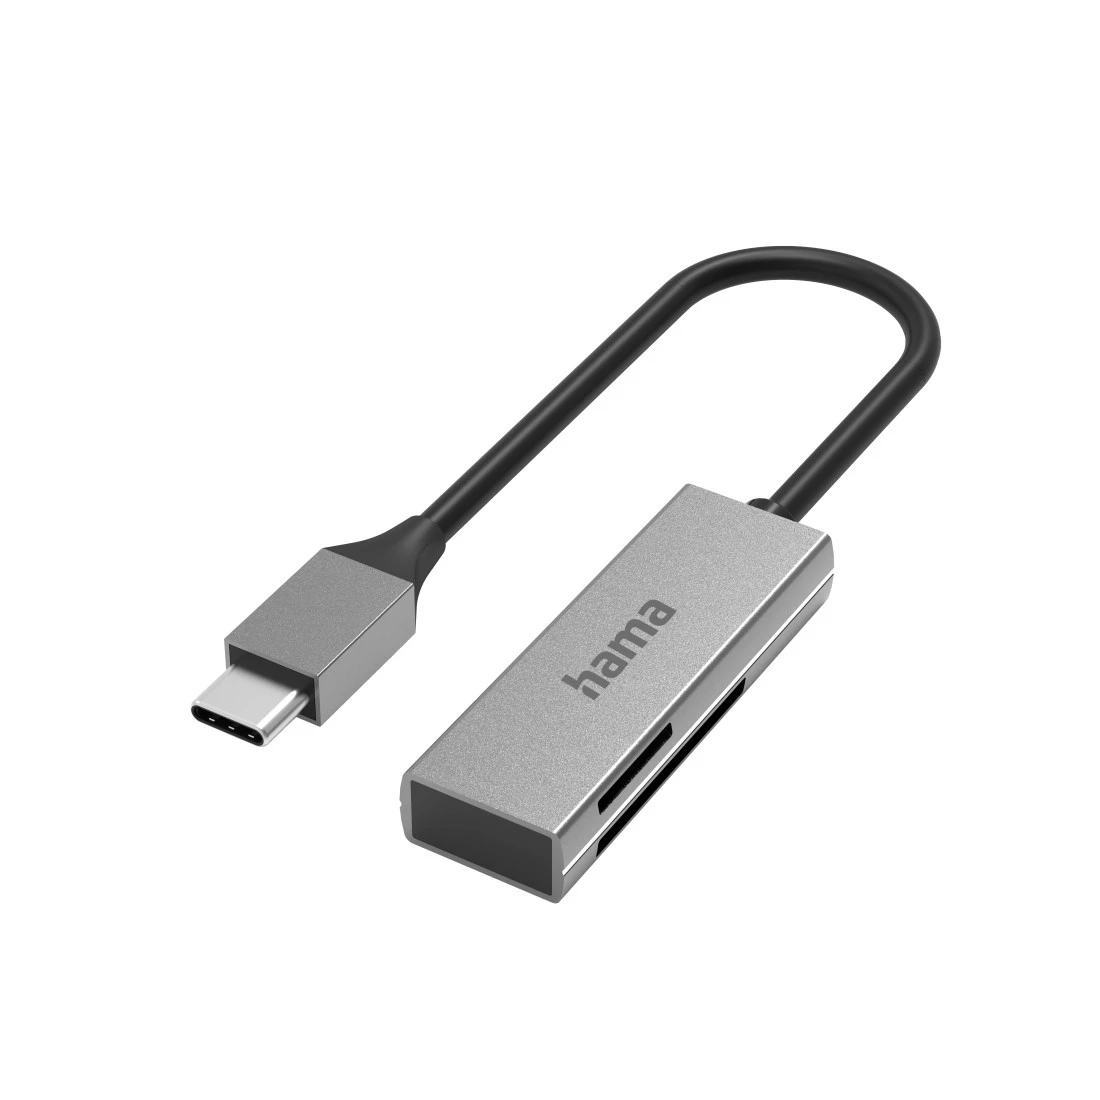 3.0 Lecteur de carte SD USB, lecteur de carte mémoire portable USB  Adaptateur USB